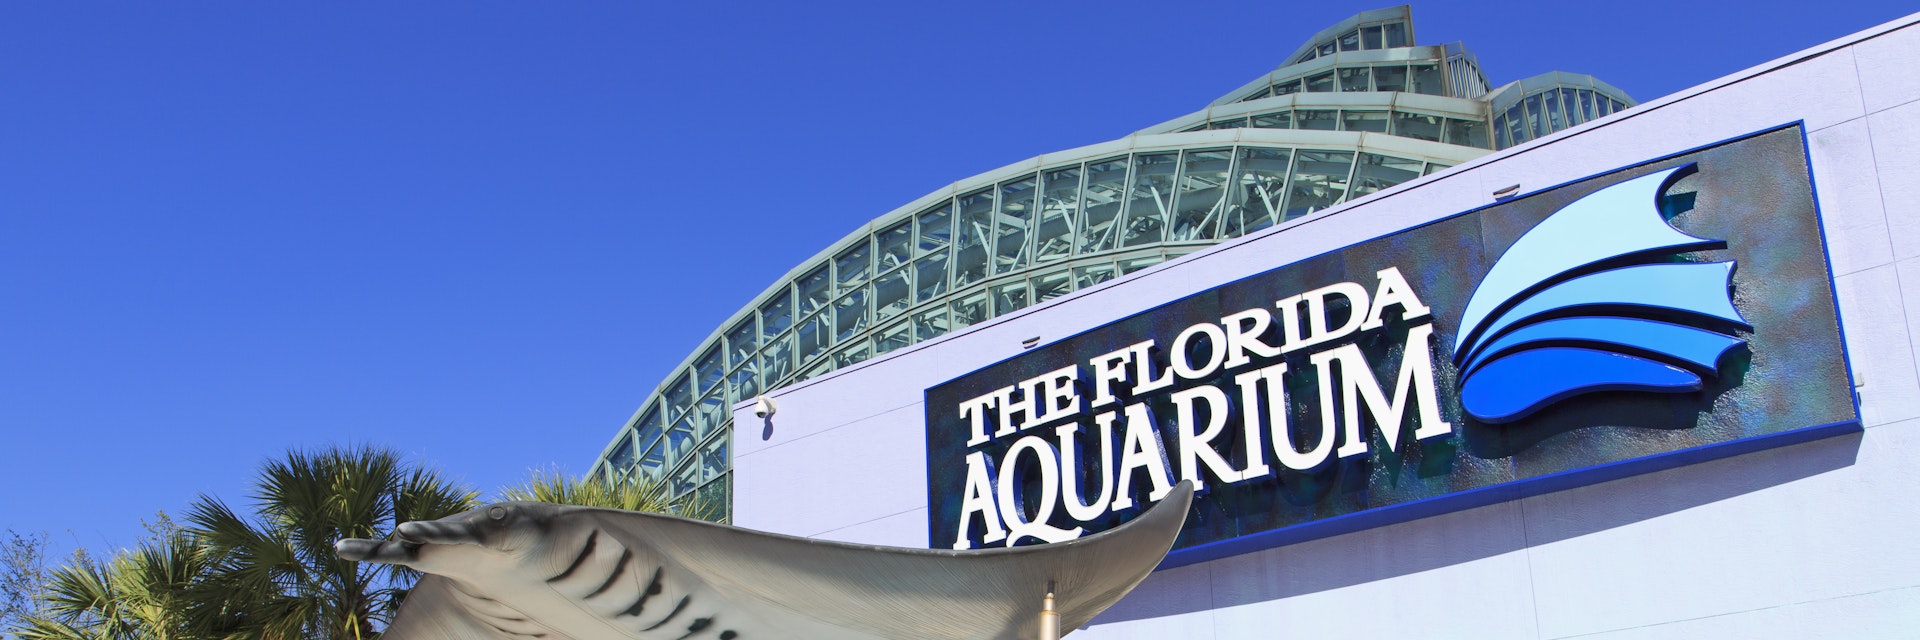 Florida Aquarium, Tampa, Florida